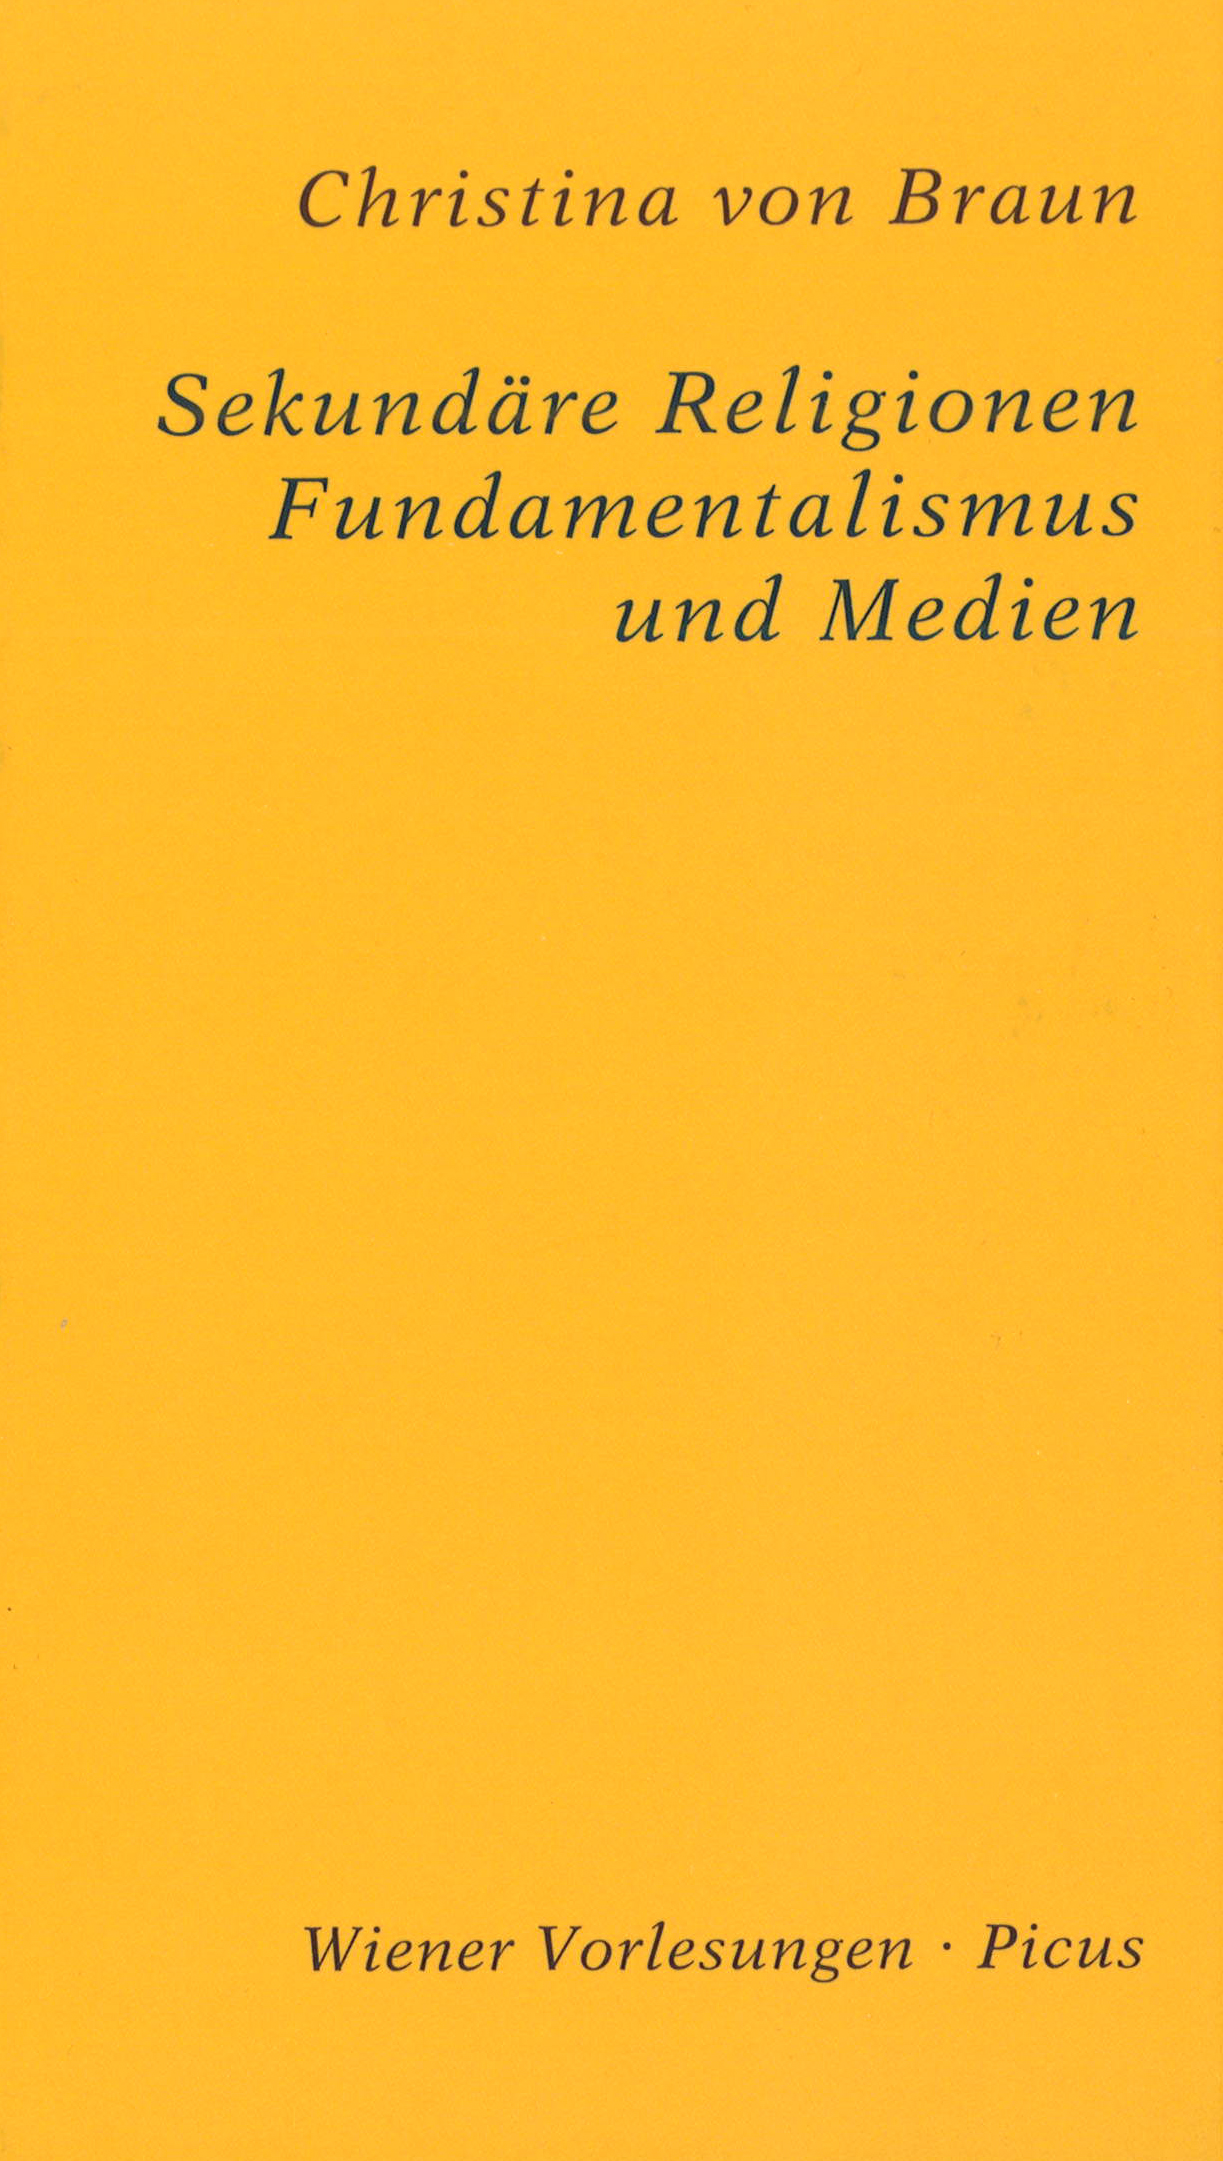 Buchcover: Christina von Braun - Sekundäre Religionen